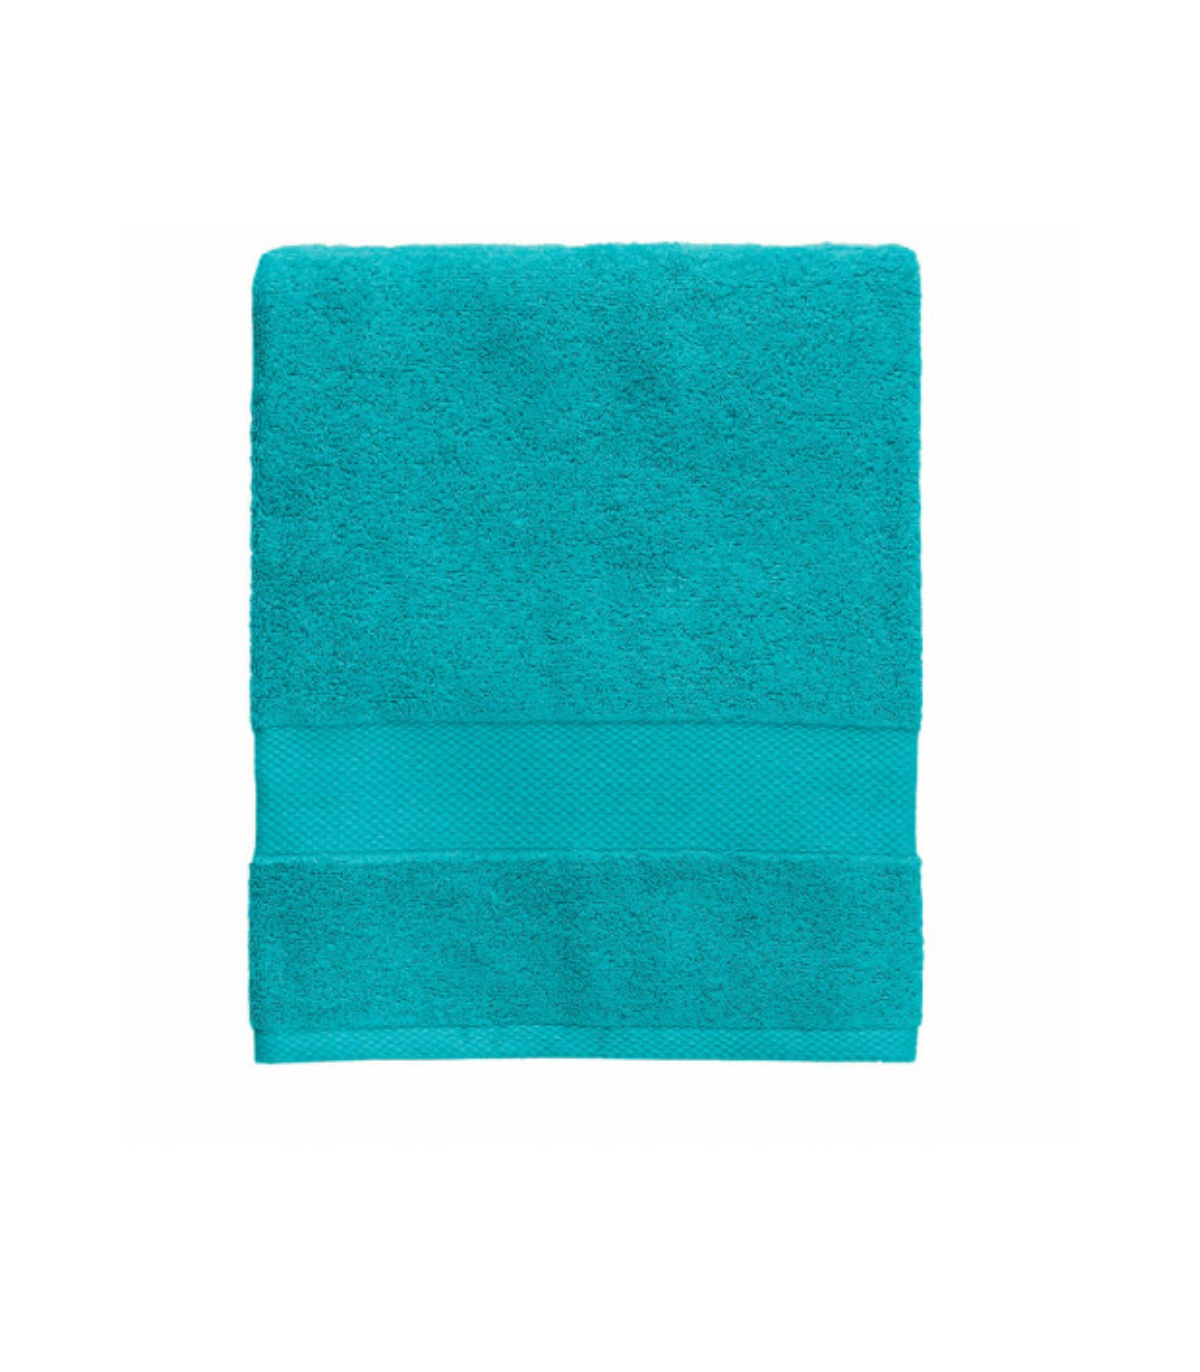 Set 10 PEZZI di asciugamani Bassetti Antracite 100% Cotone di alta